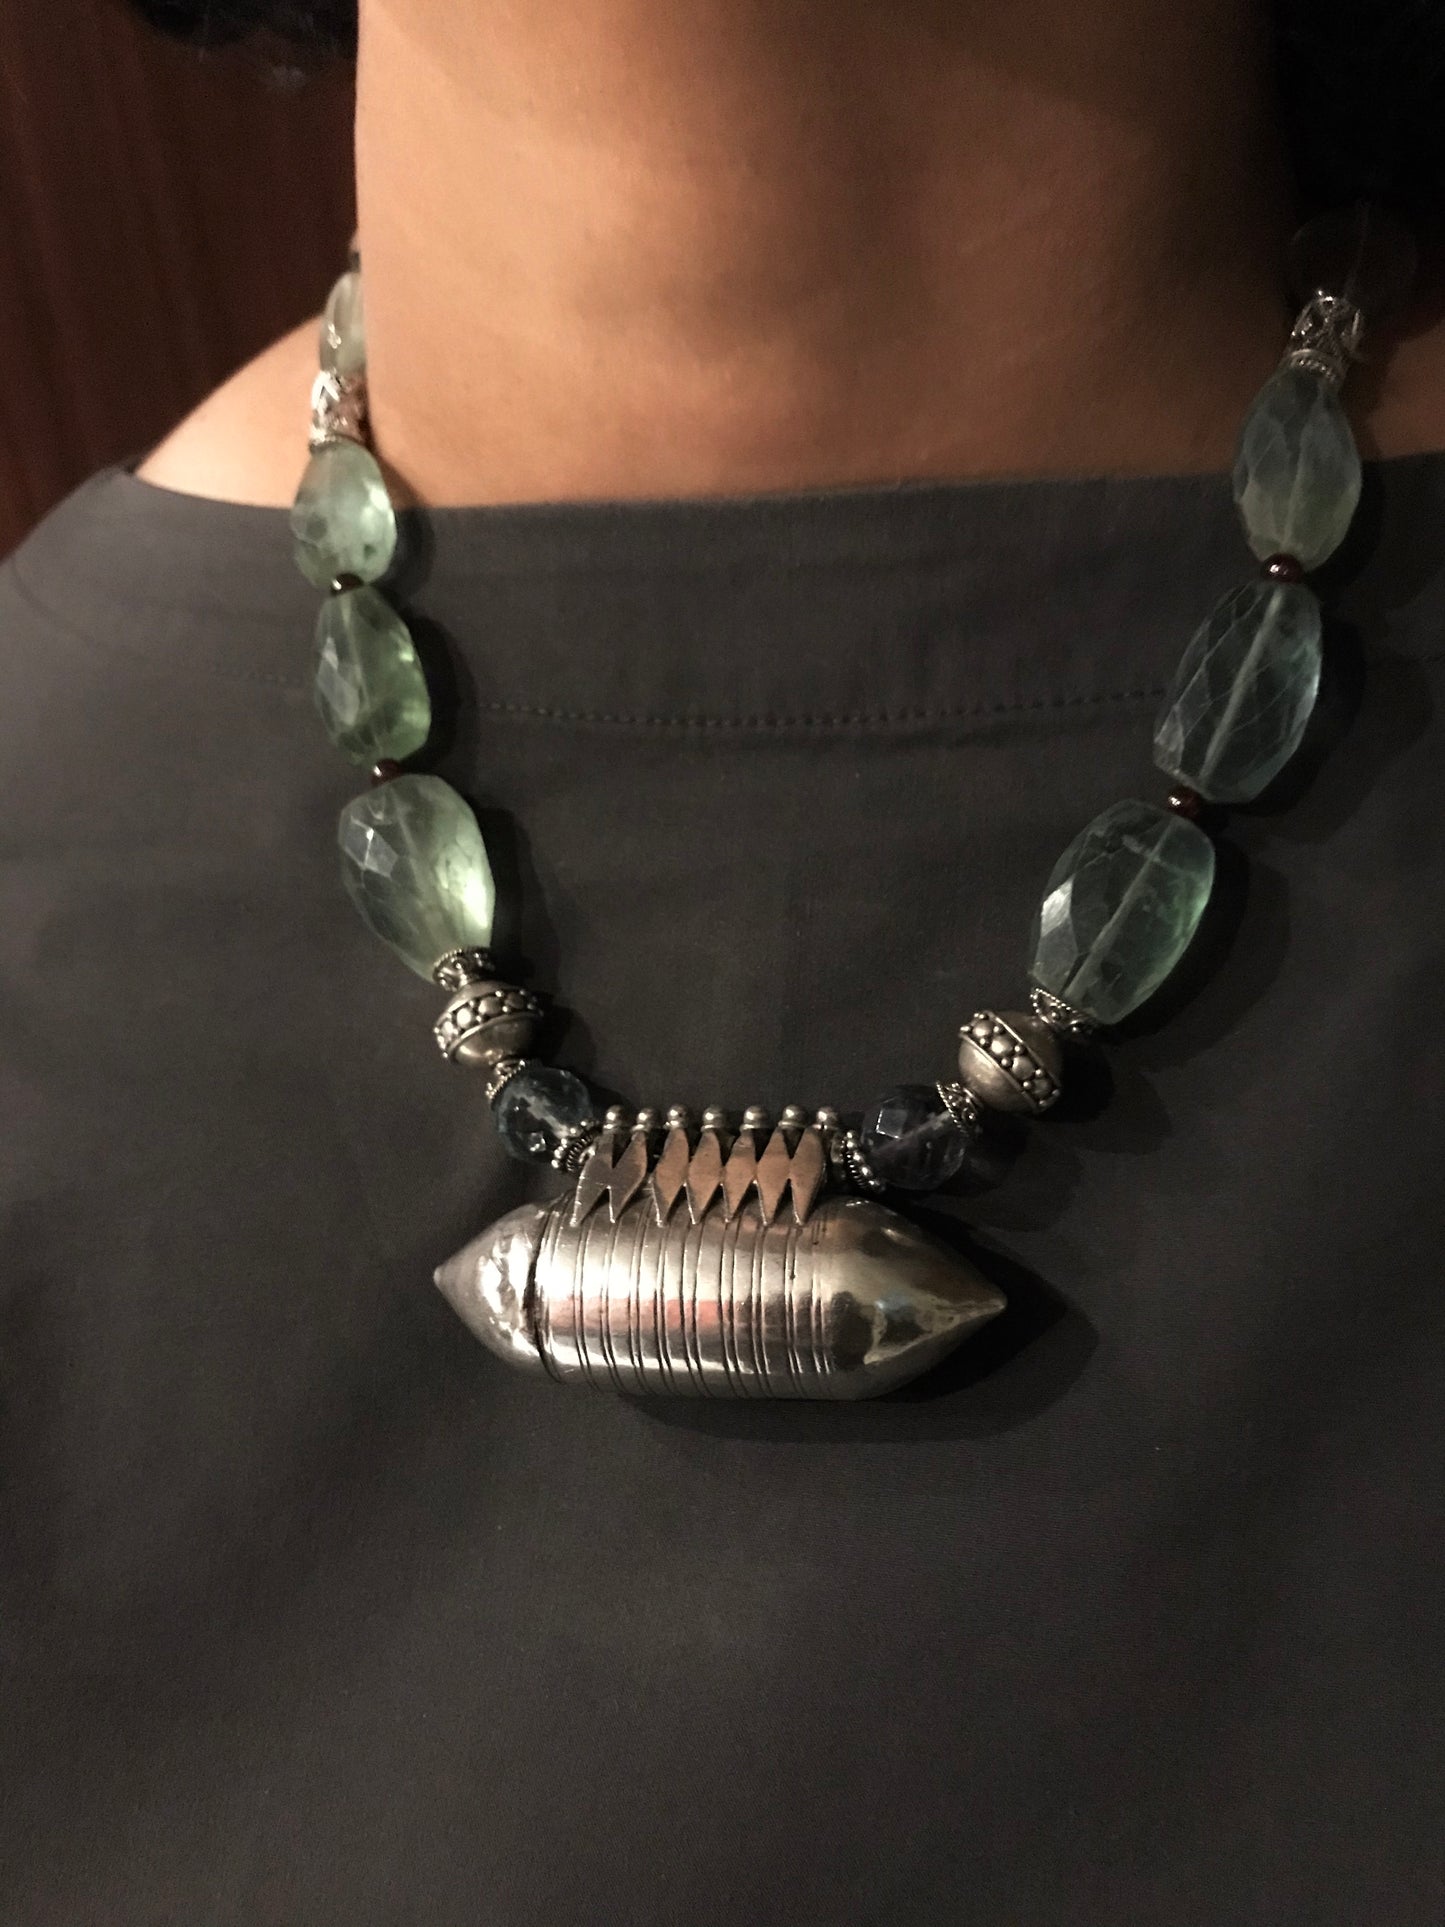 Antique silver Amulet necklace